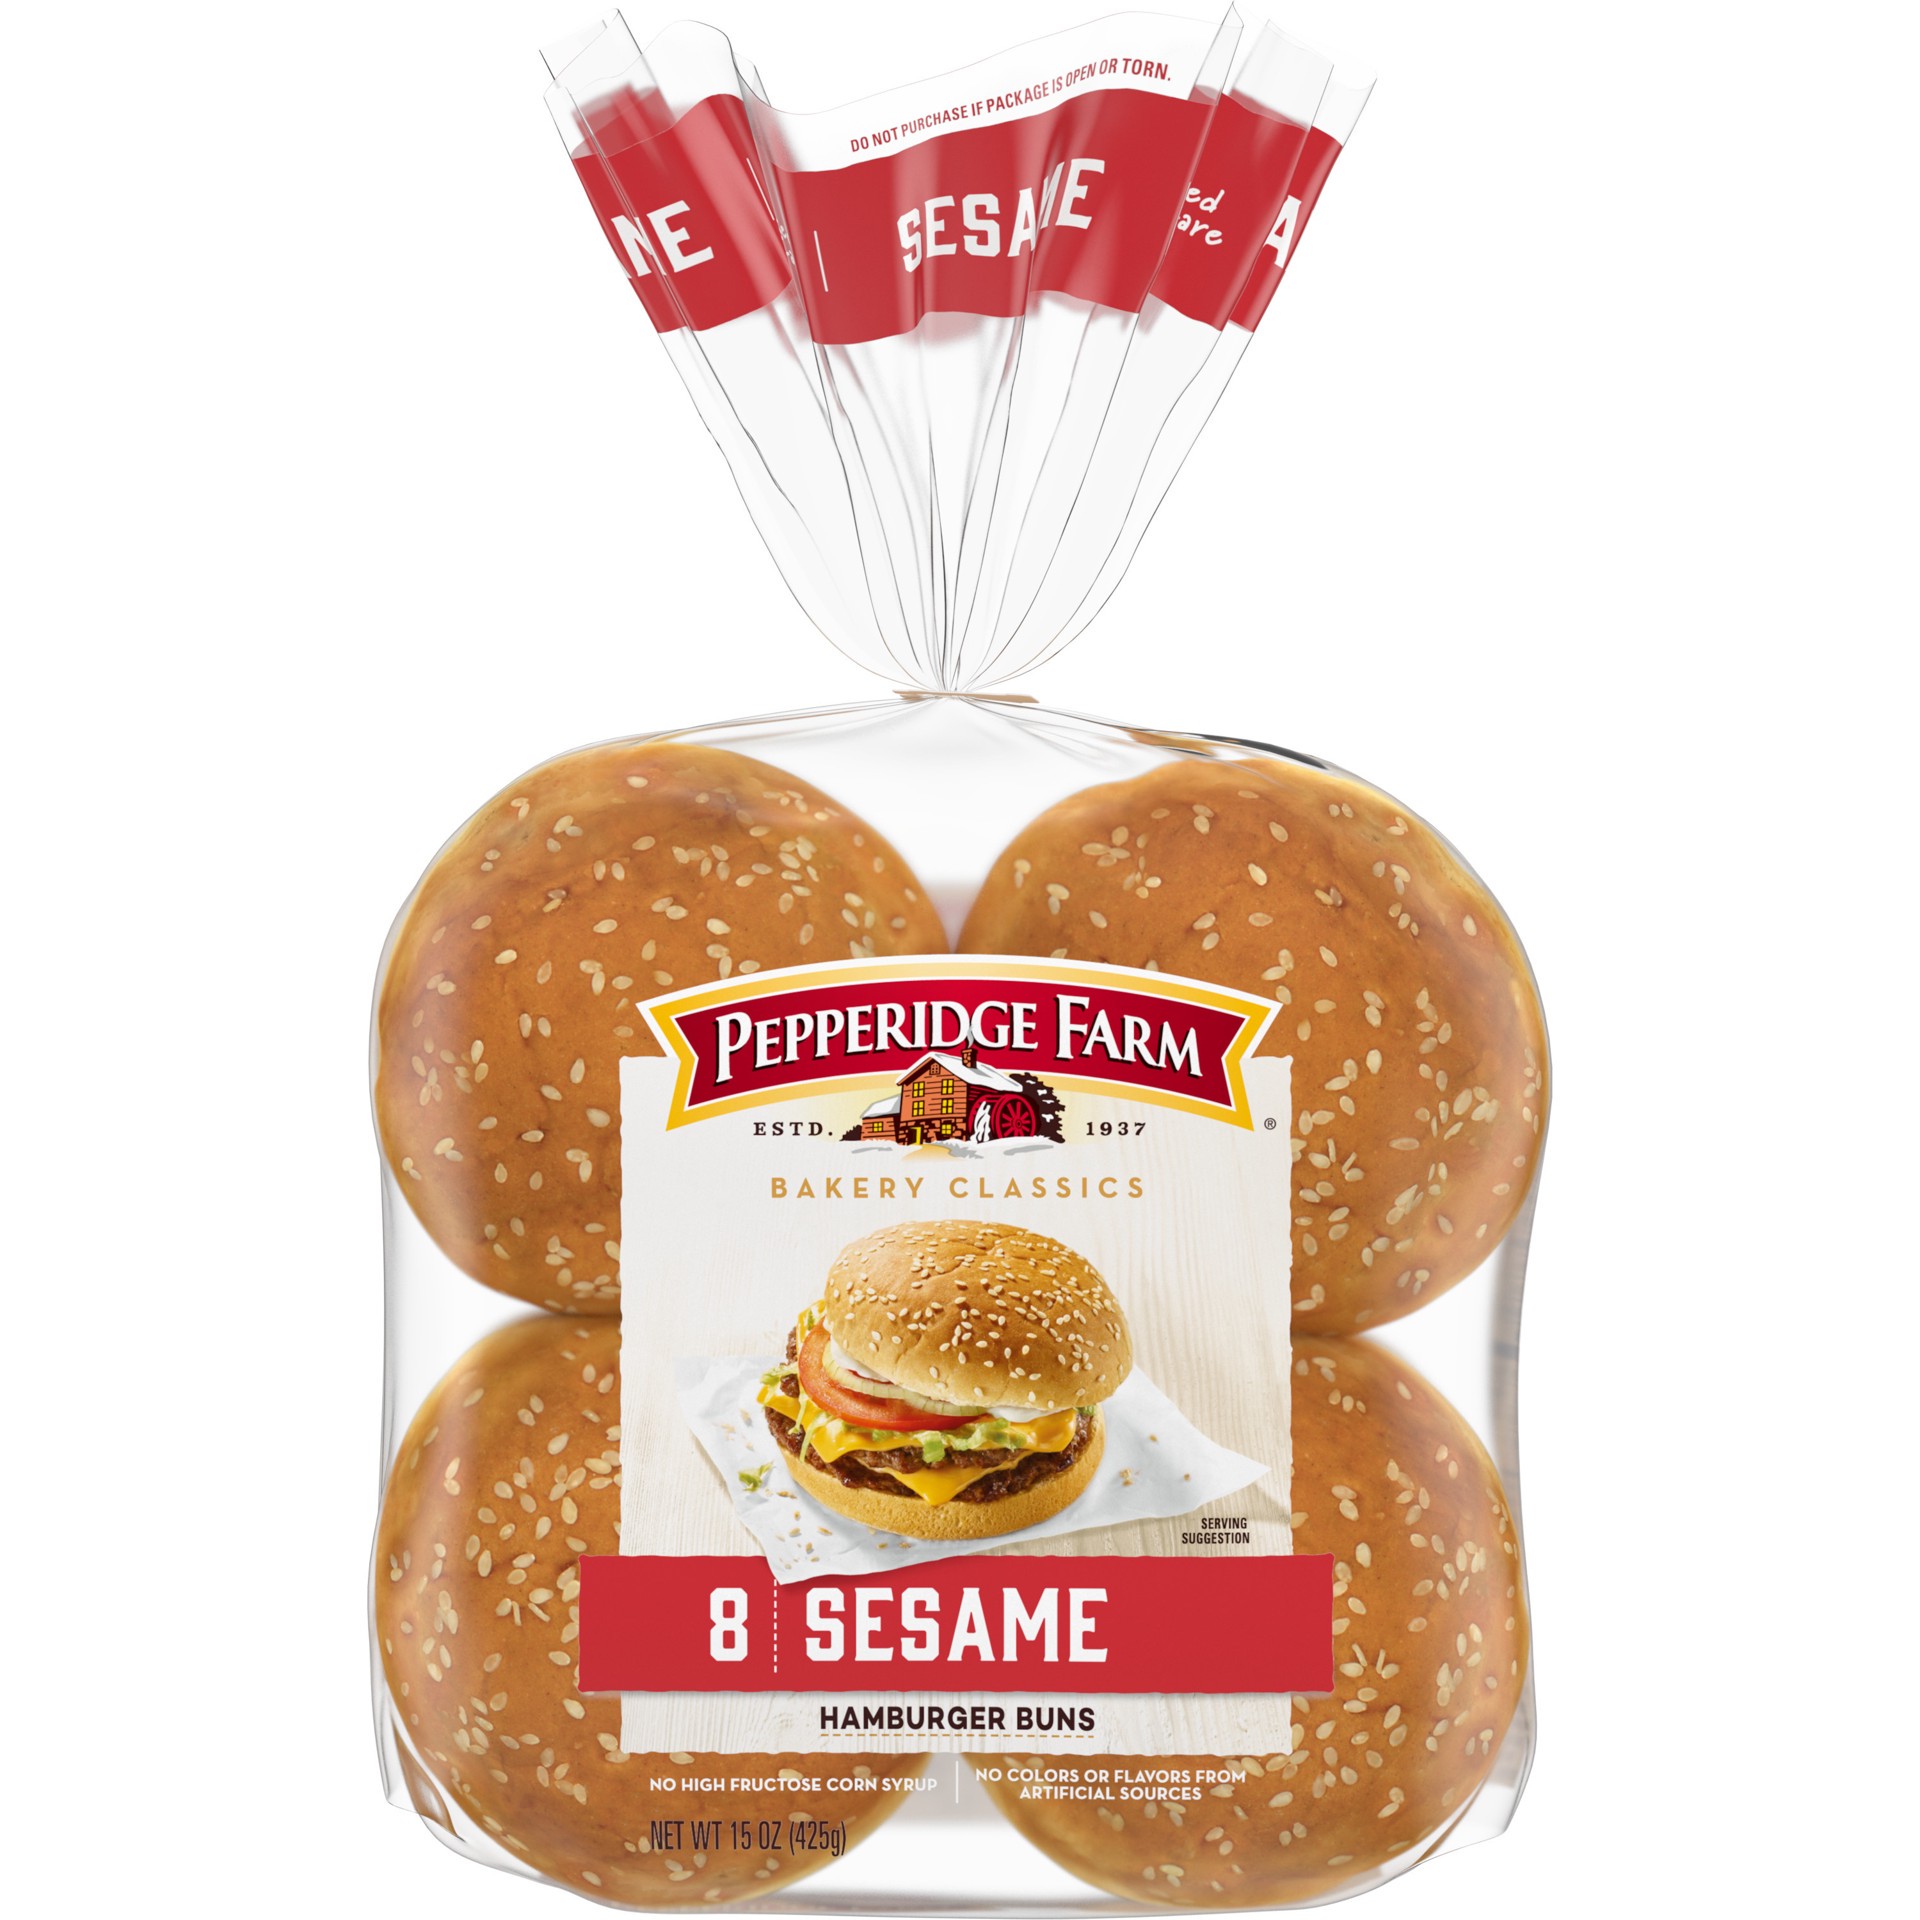 slide 1 of 125, Pepperidge Farm Sesame Topped Hamburger Buns, 8-Pack Bag, 15 oz